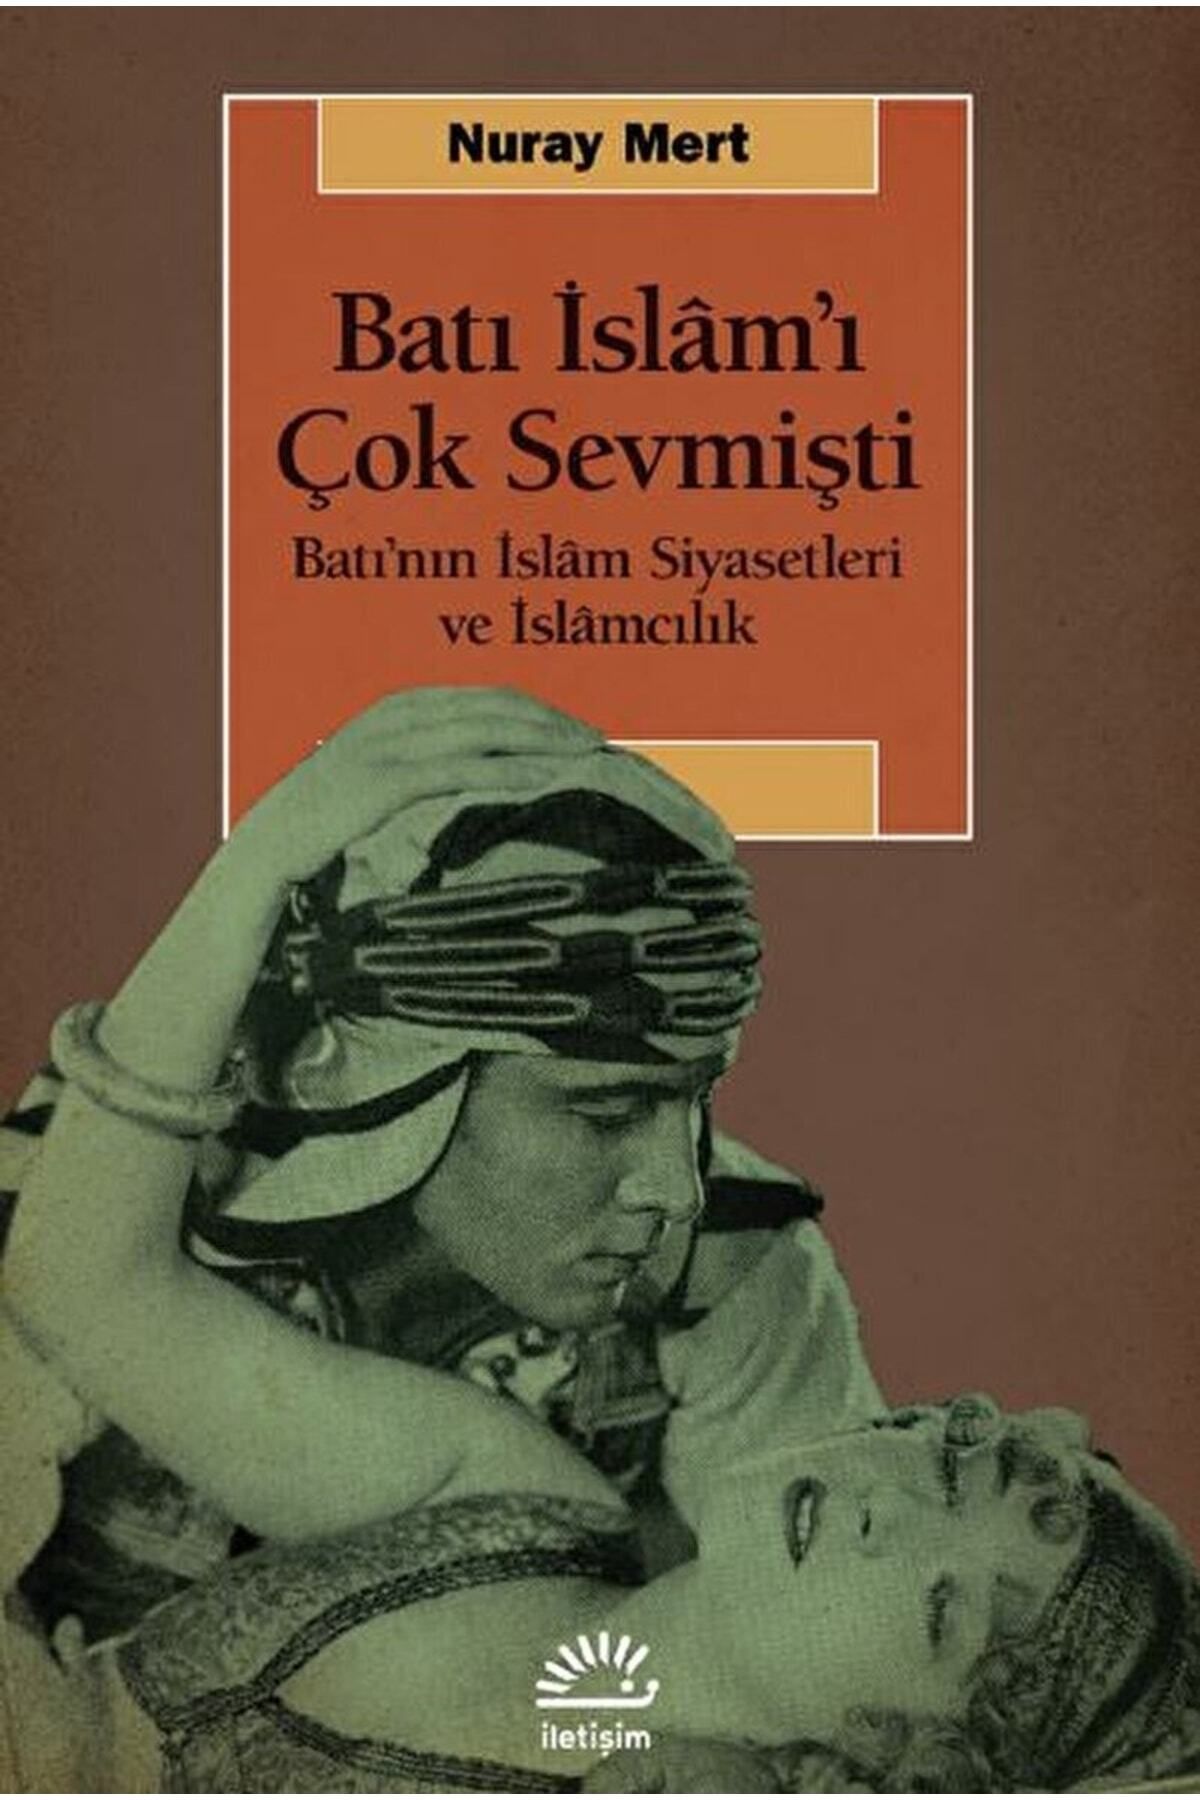 İletişim Yayınları Batı Islam’ı Çok Sevmişti / Nuray Mert / / 9789750532559